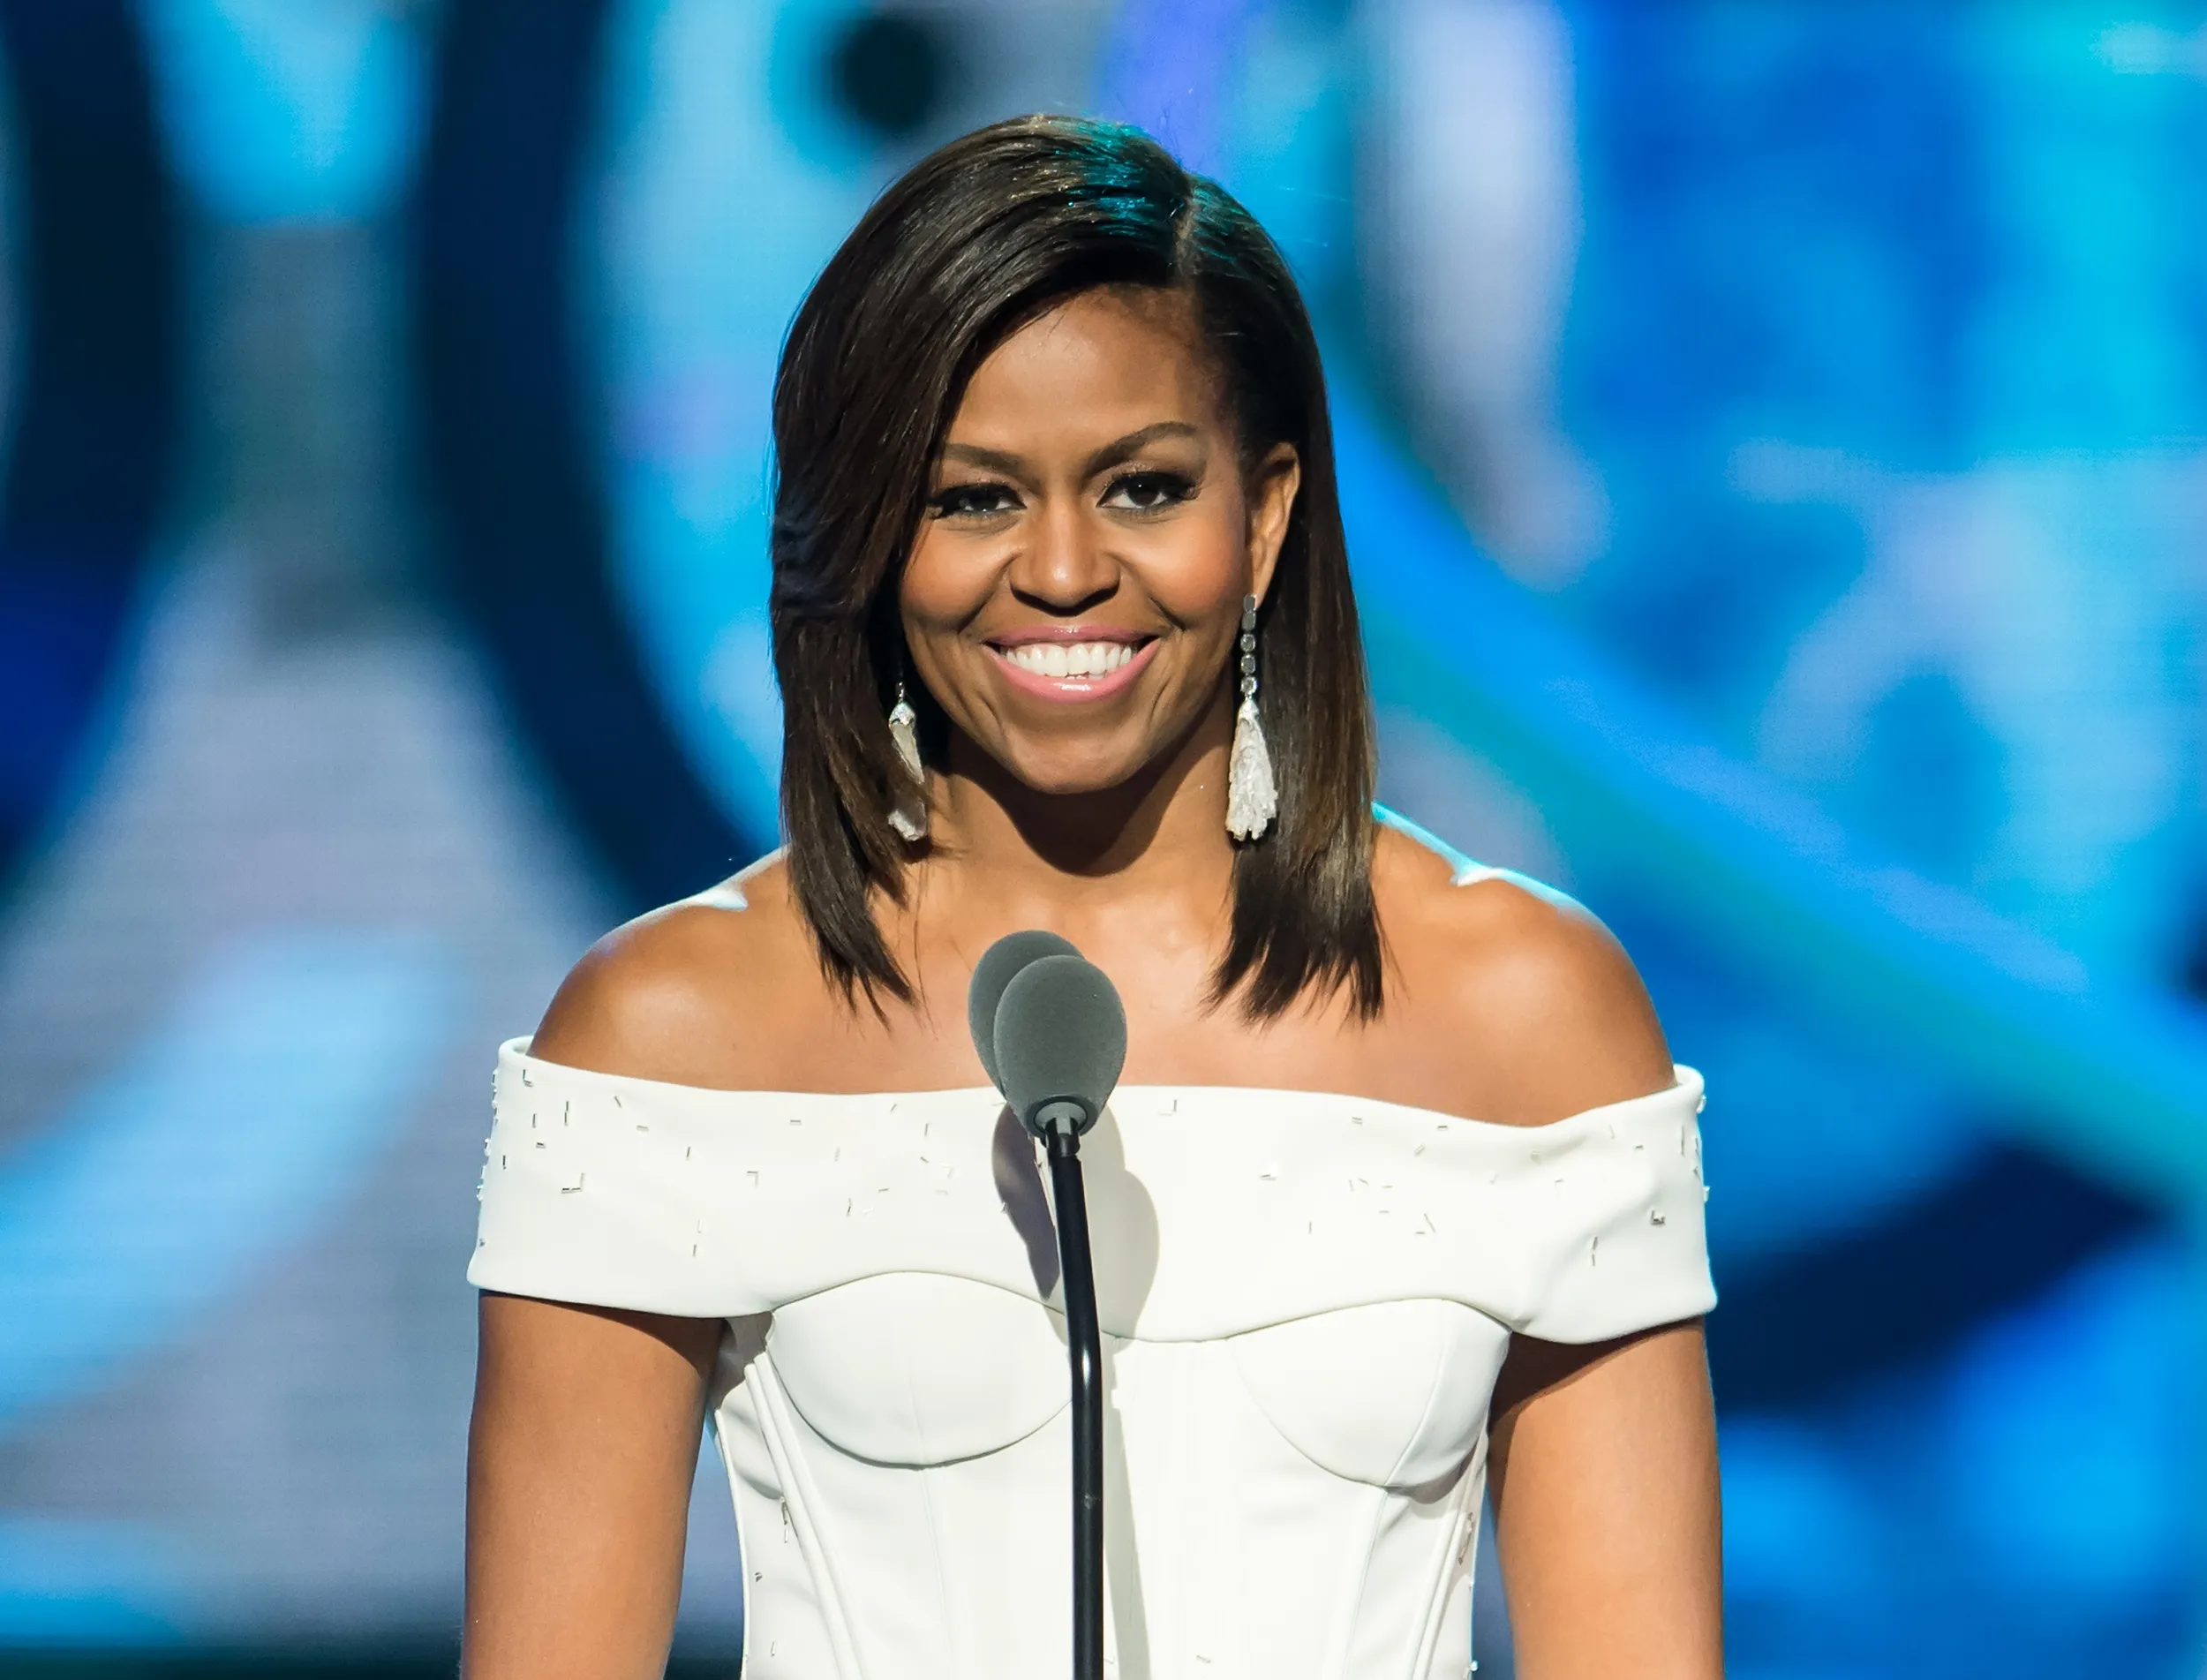 Continuando el legado de Michelle Obama